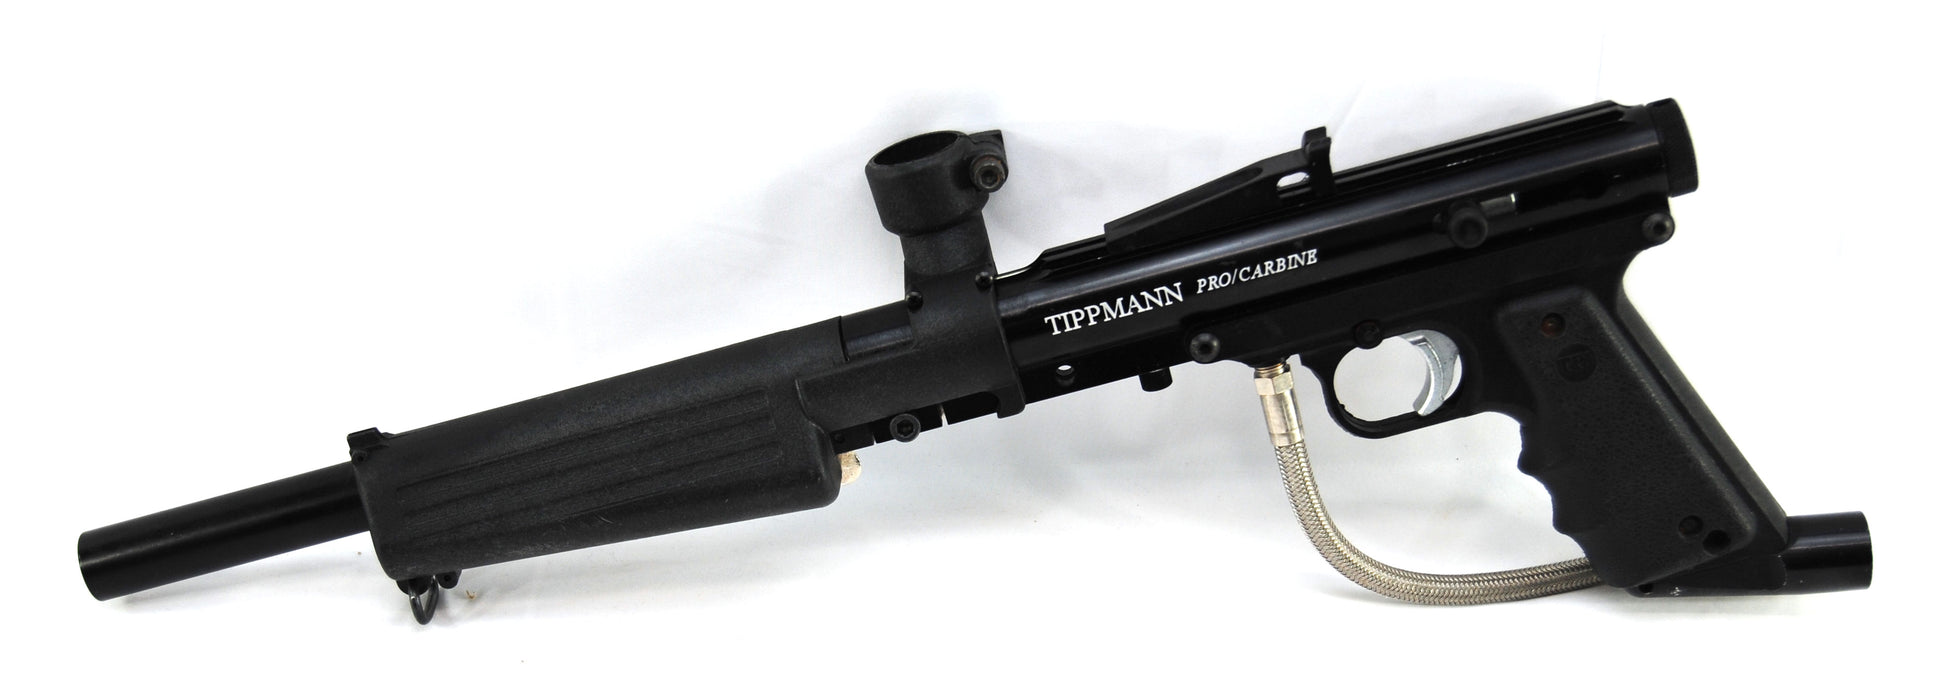 Used Tippmann Sports Pro/Carbine - Tippmann Sports